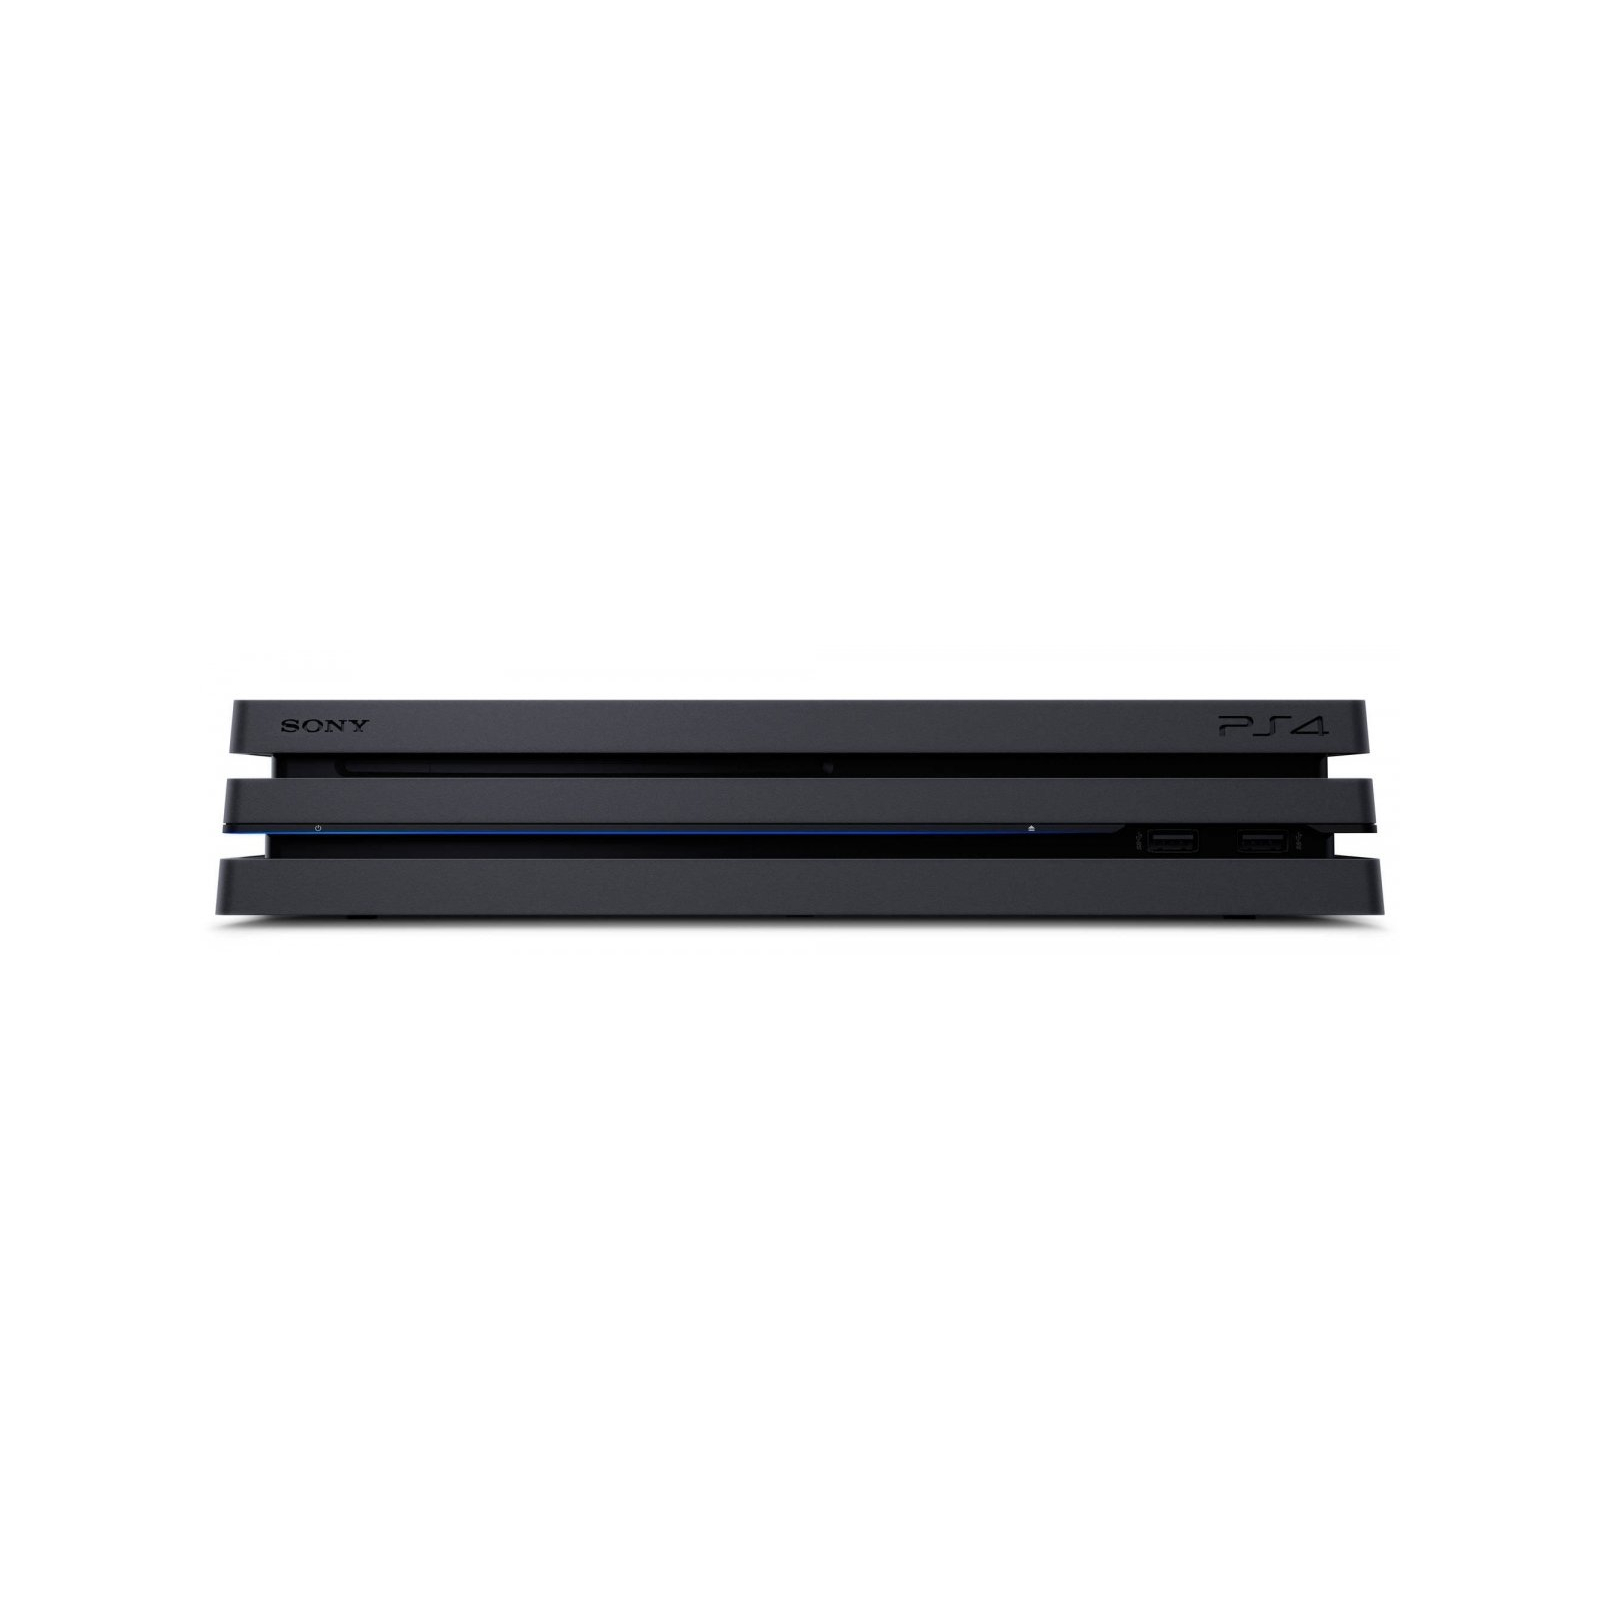 Игровая консоль Sony PlayStation 4 Pro 1Tb Black (9887850) изображение 4